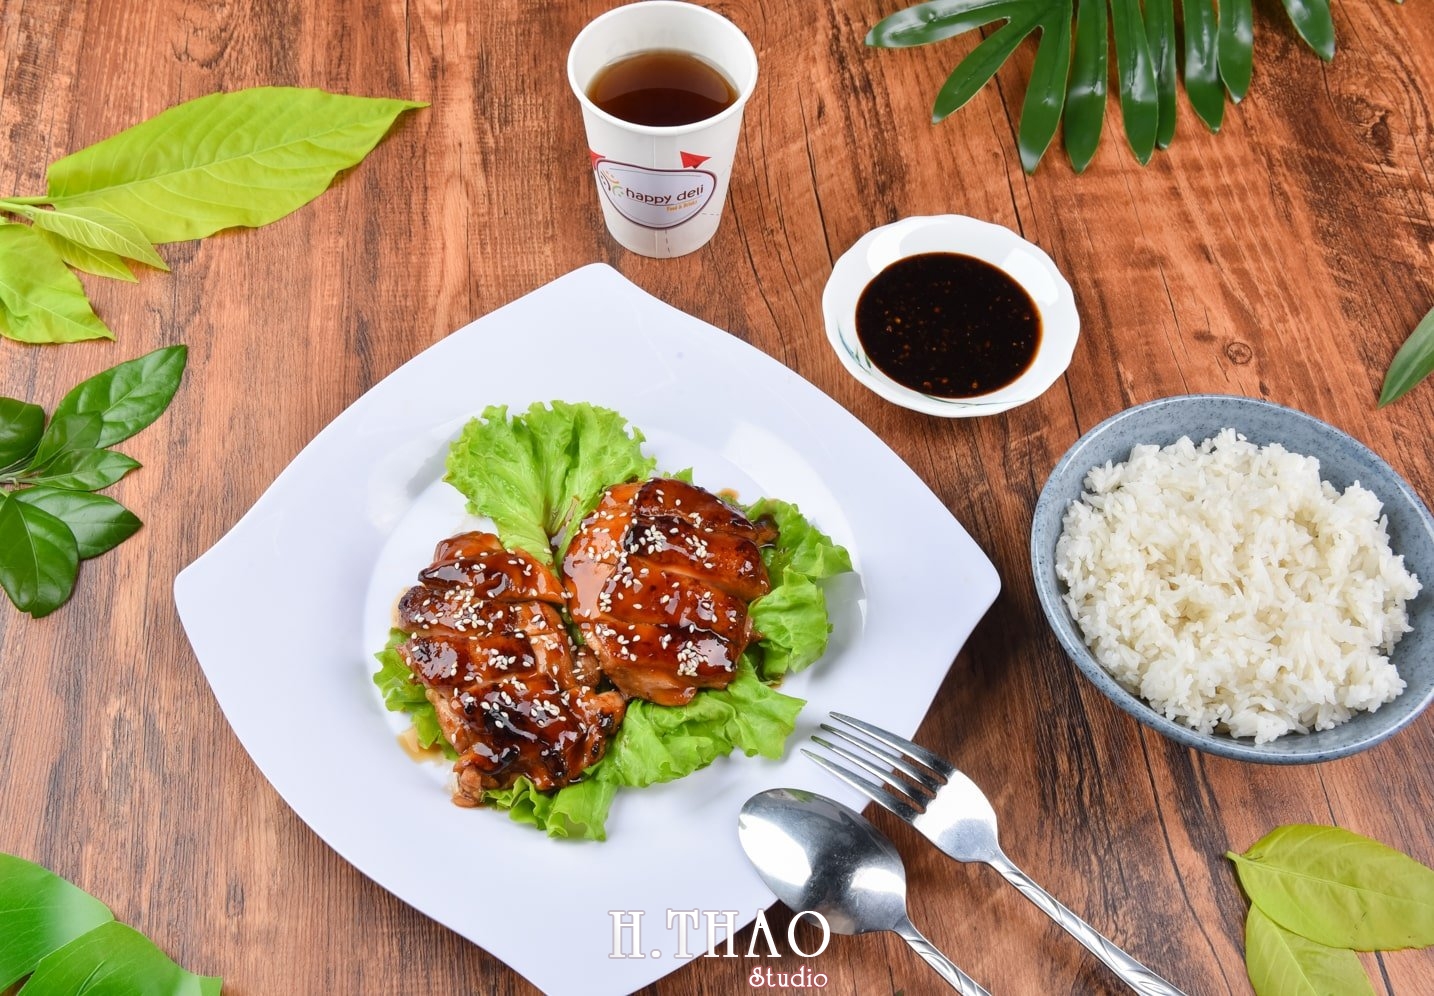 Anh food layout 8 min - Dịch vụ chụp ảnh đồ ăn đẹp, giá rẻ tại TpHCM - HThao Studio